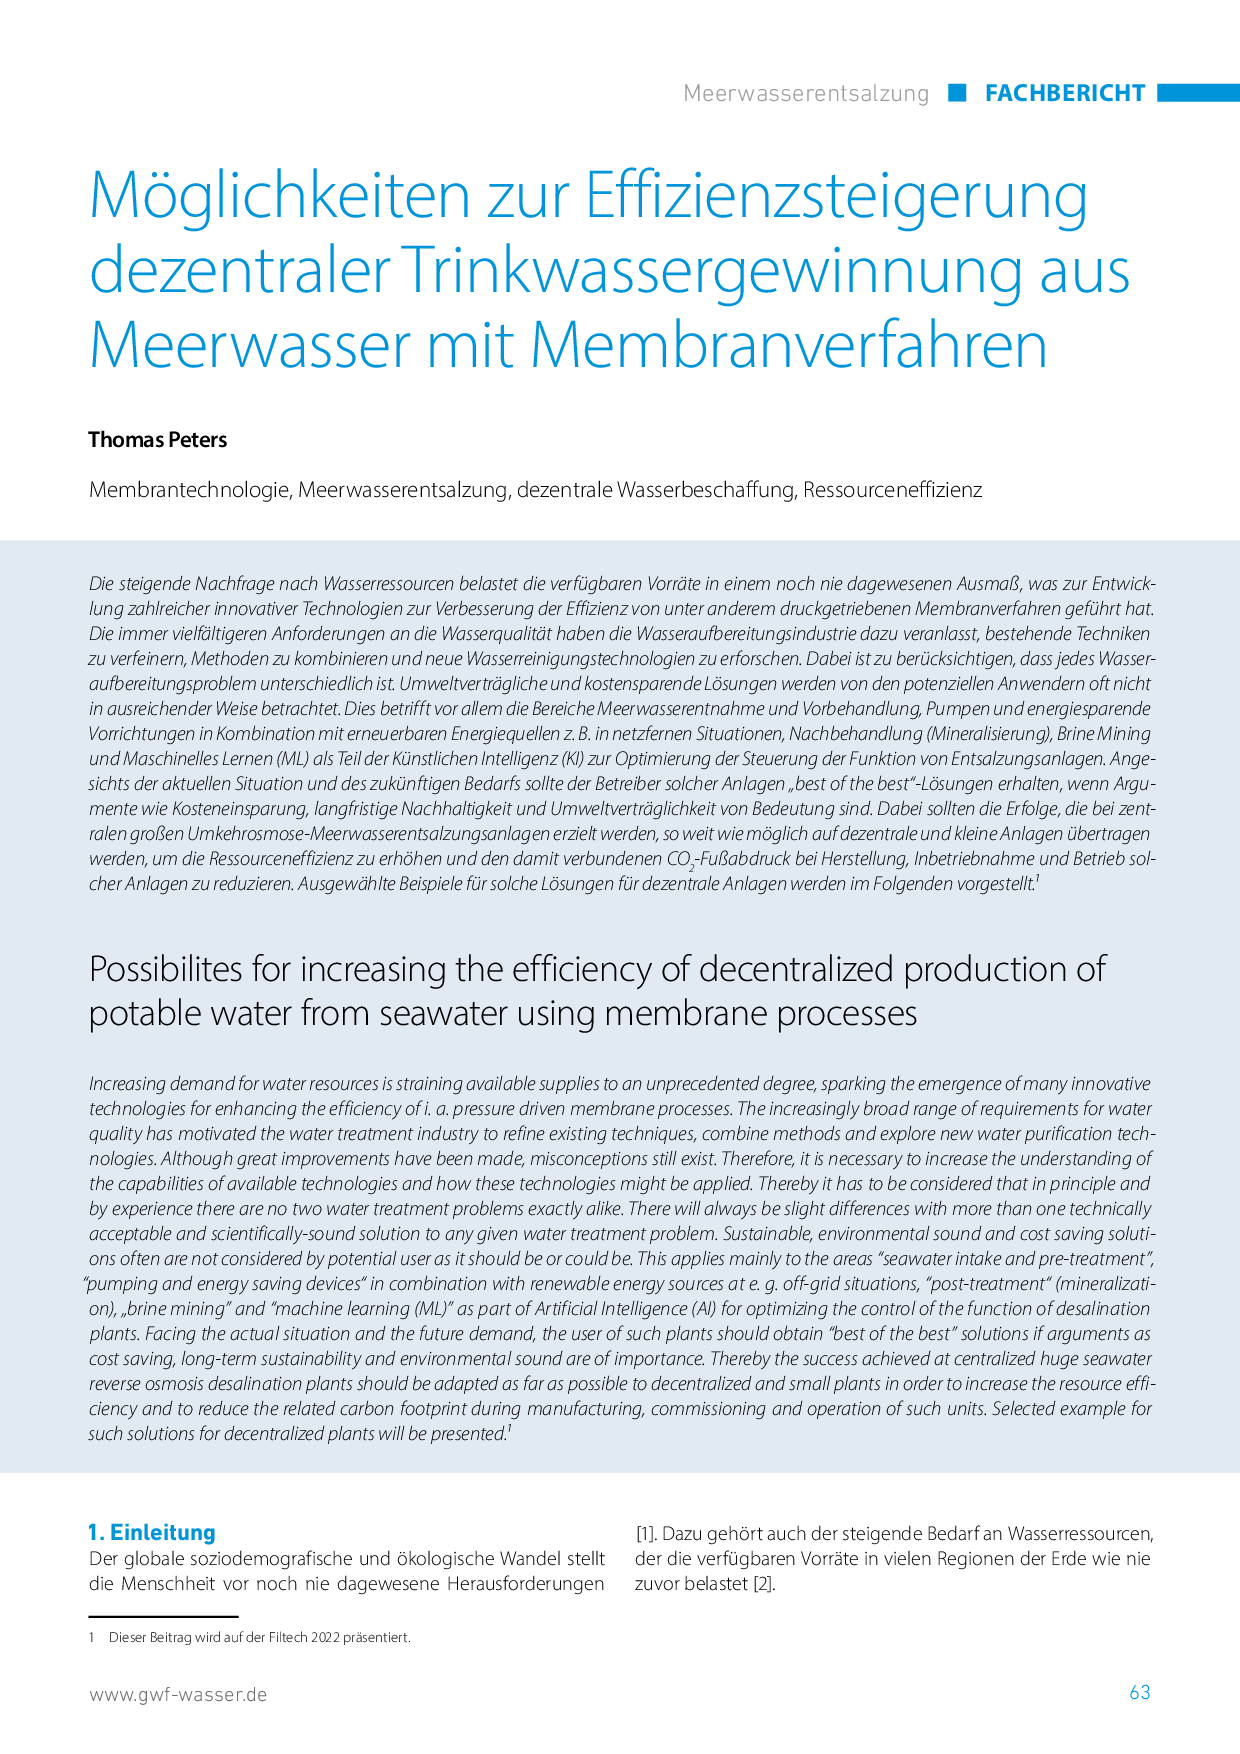 Möglichkeiten zur Effizienzsteigerung dezentraler Trinkwassergewinnung aus Meerwasser mit Membranverfahren